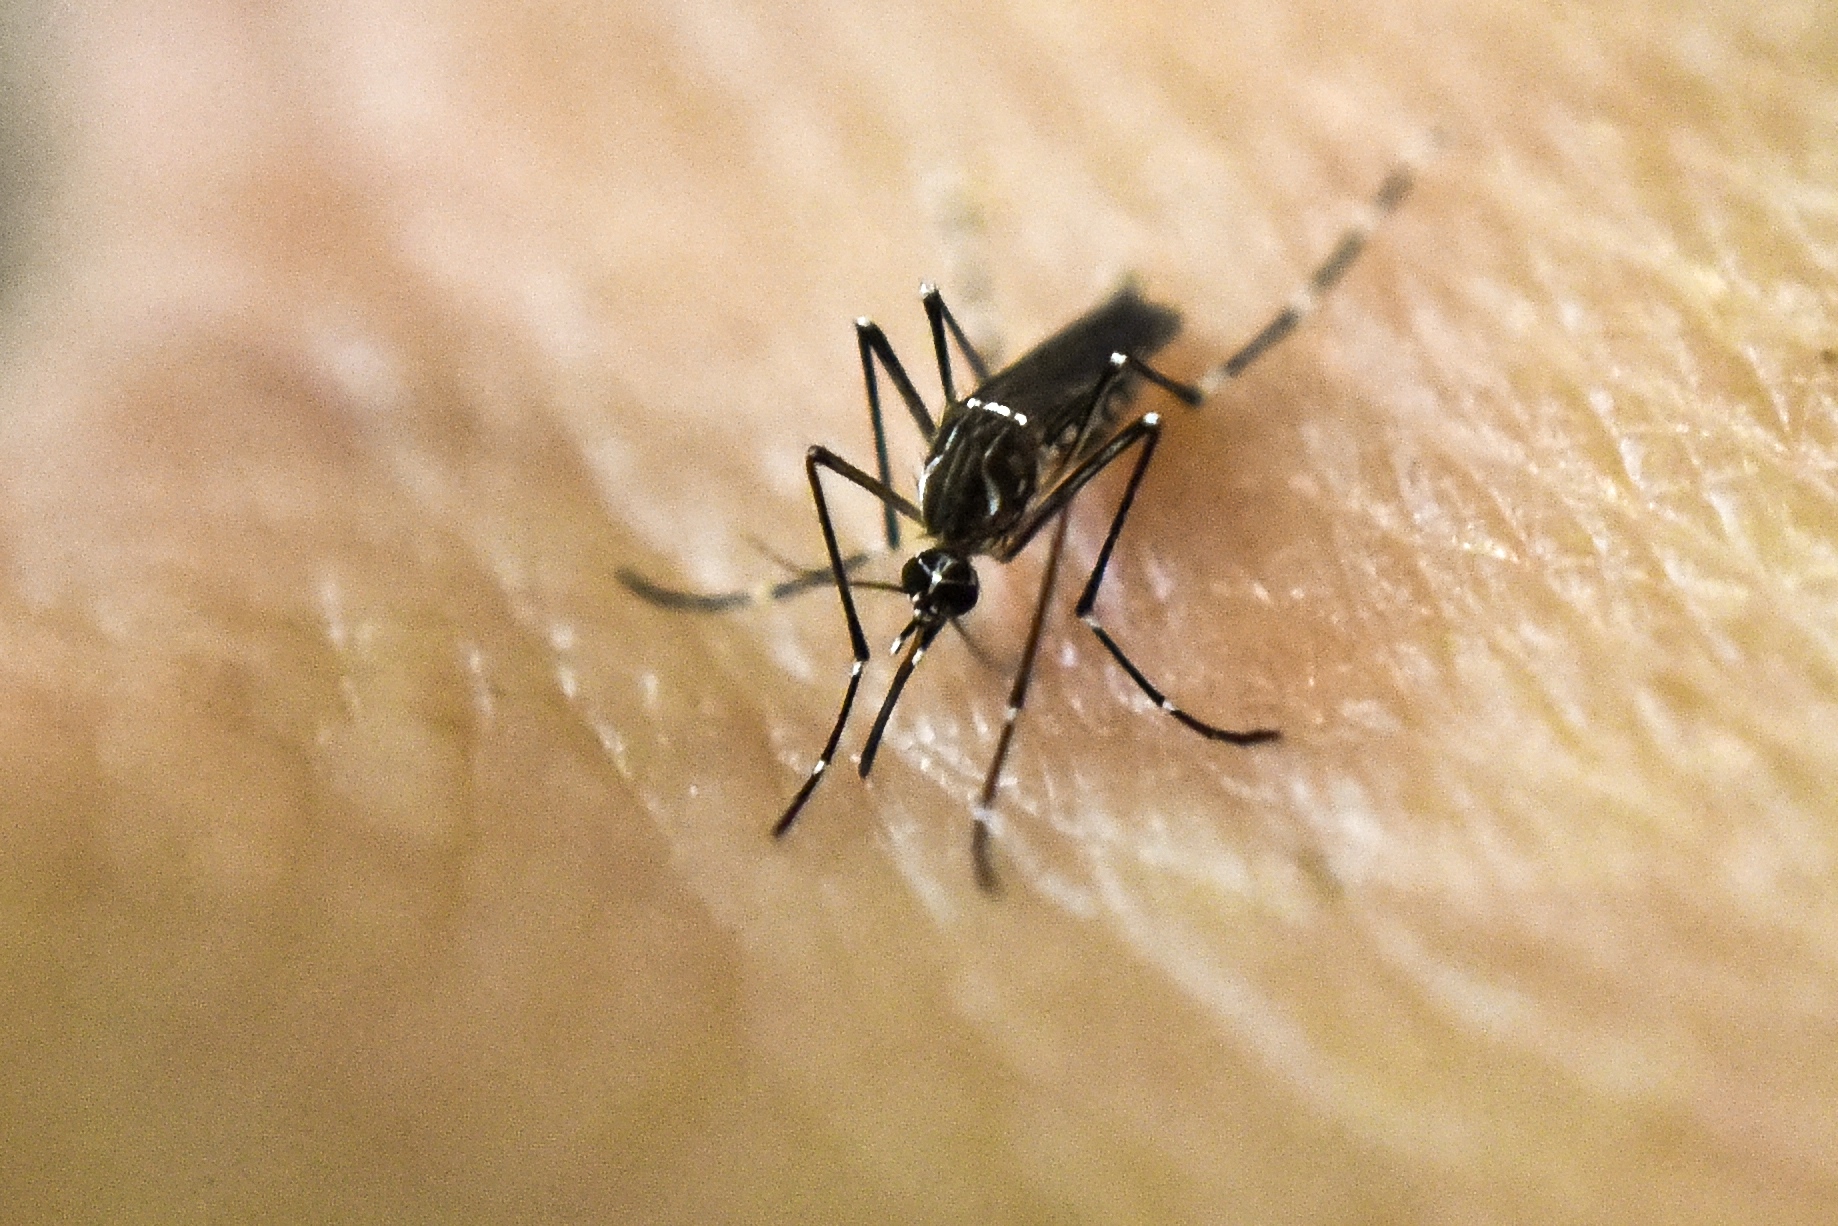 Premier cas de microcéphalie associée au virus Zika en Espagne 